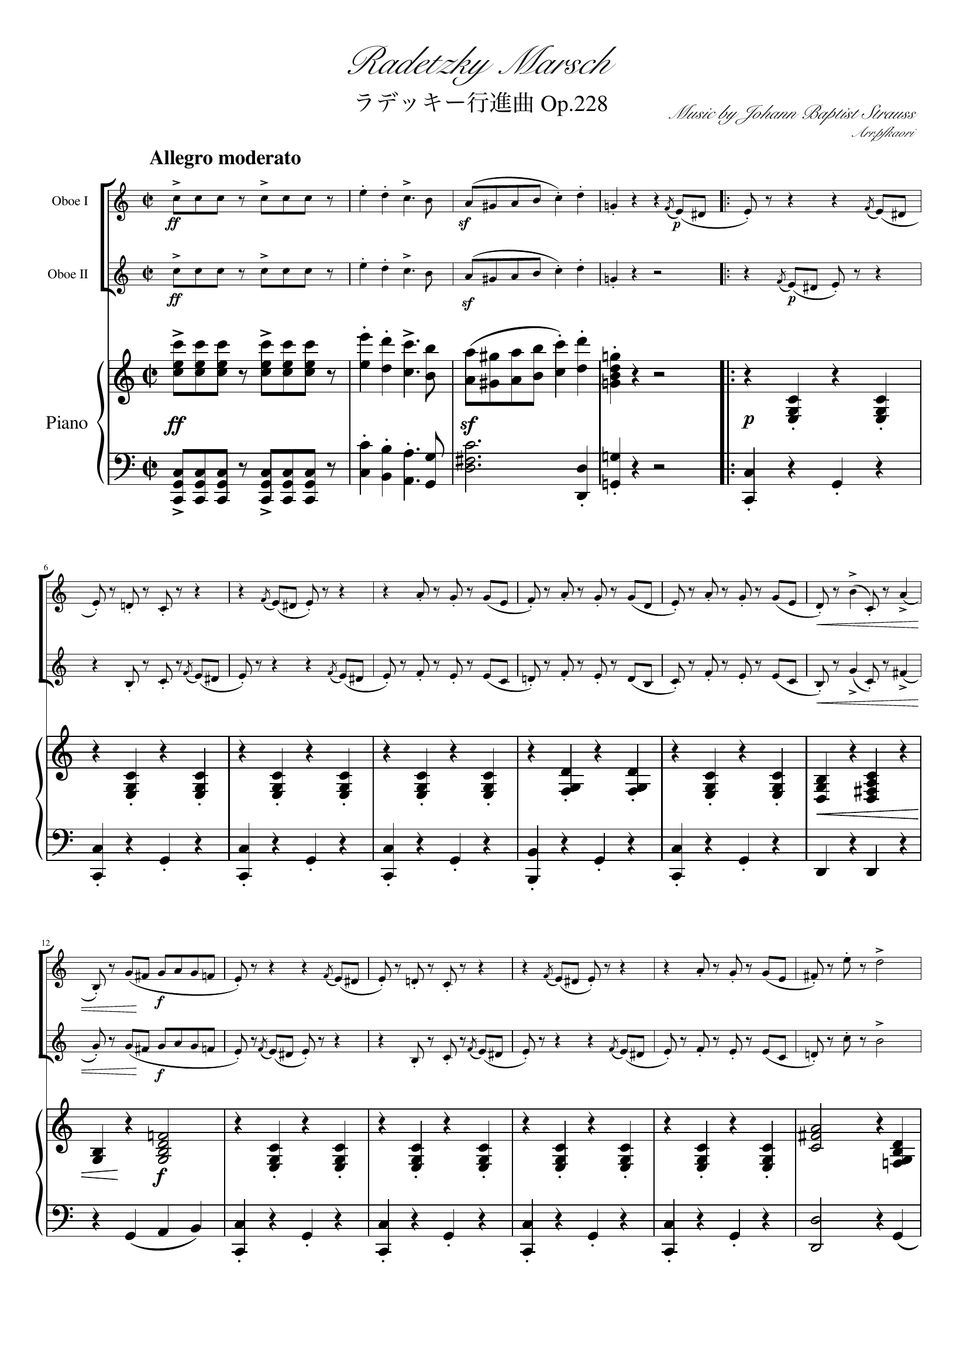 ヨハンシュトラウス1世 - ラデッキー行進曲 (D・ピアノトリオ/オーボエデュオ) by pfkaori